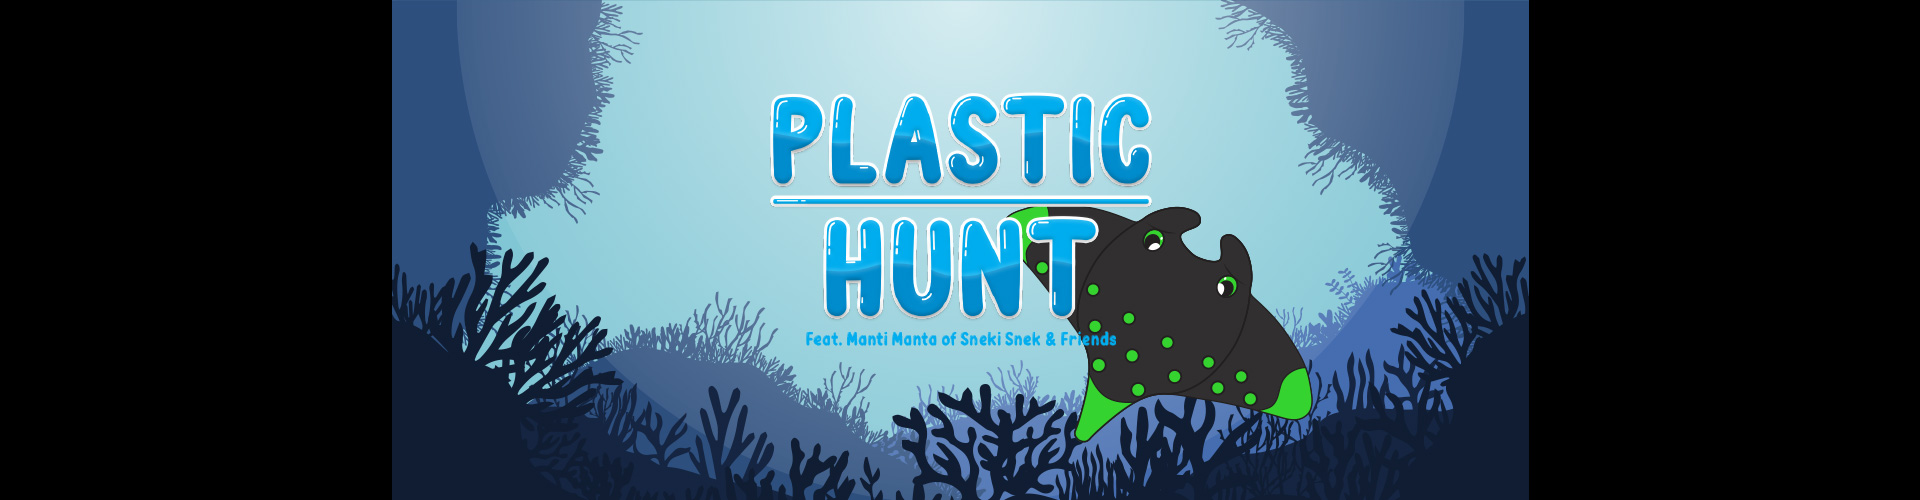 Plastic Hunt